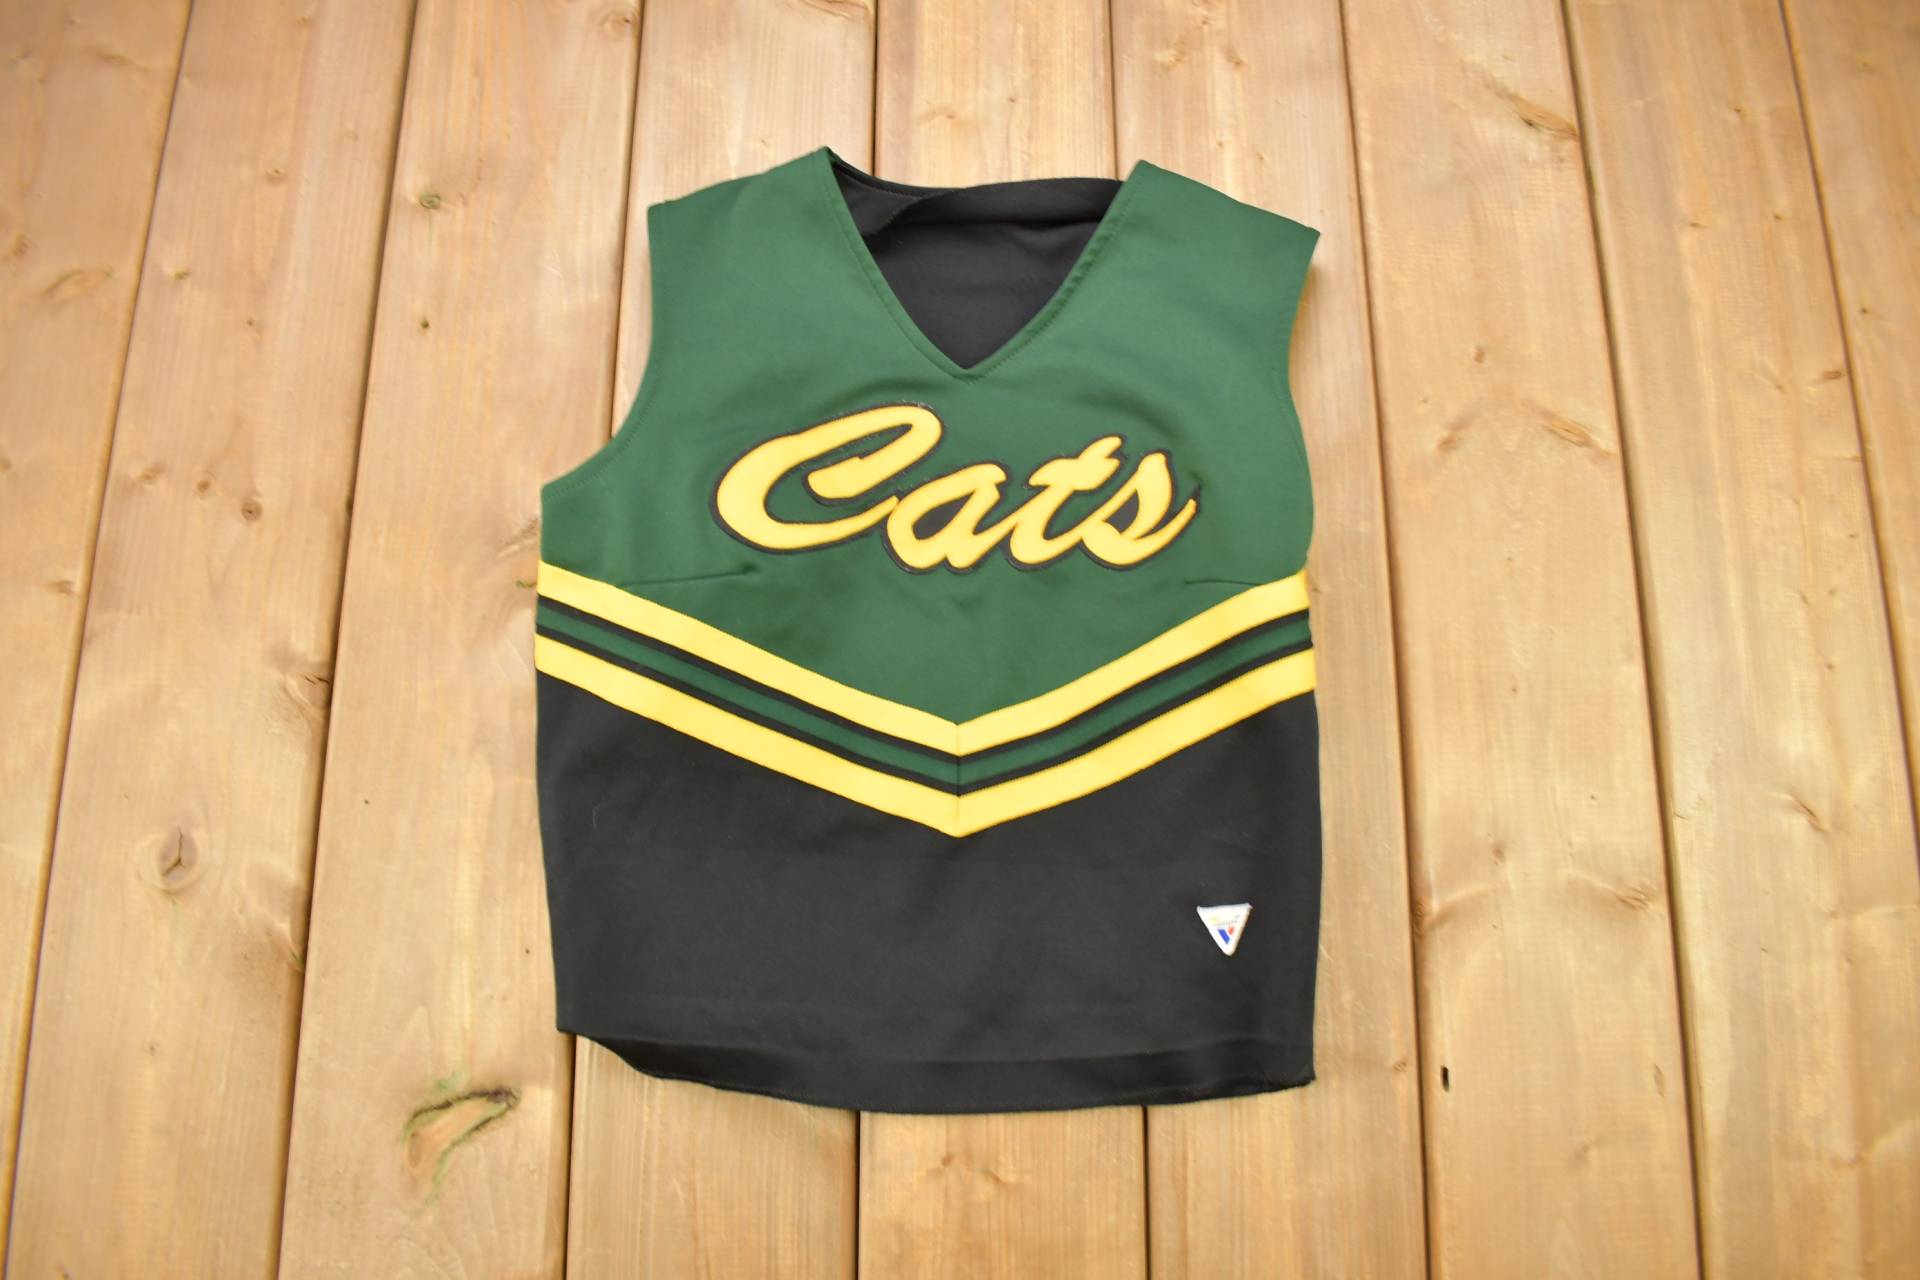 Vintage 1980Er Cats Varsity Cheerleading Uniform Jersey/Cheer Sportbekleidung Mädchen Größe 38 Made in Usa von Lostboysvintage